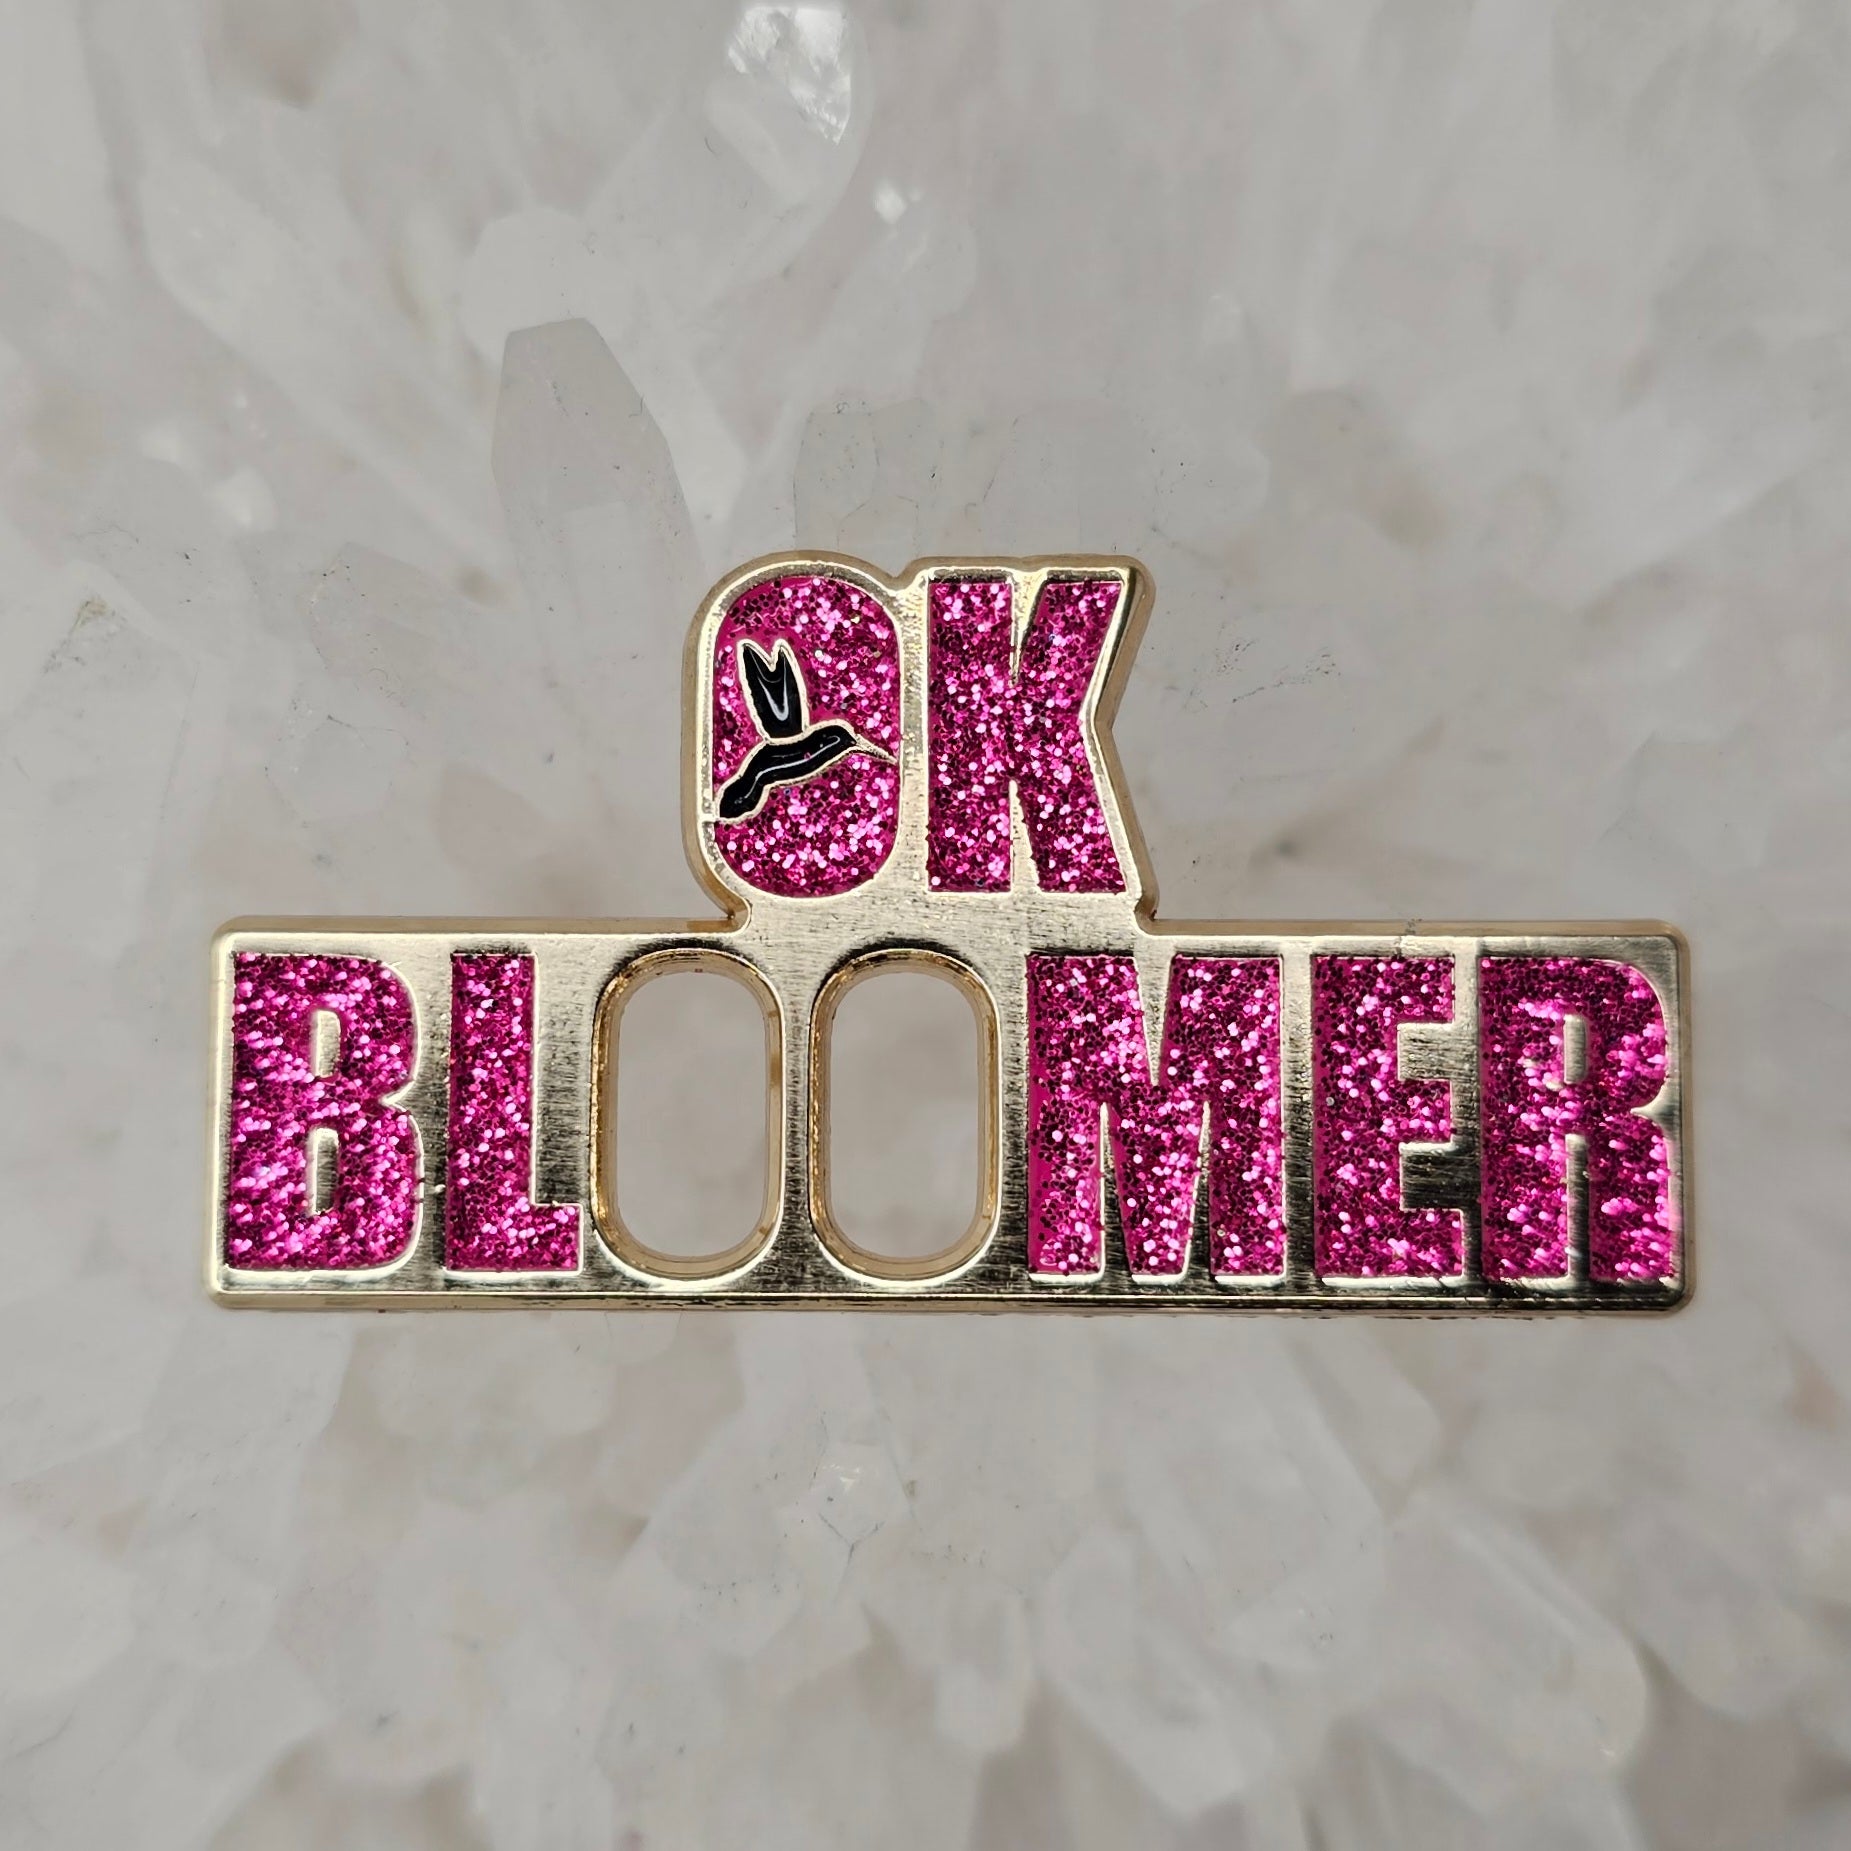 Ok Bloomer Okay Boomer Hummingbird V1 Enamel Pins Hat Pins Lapel Pin Brooch Badge Festival Pin